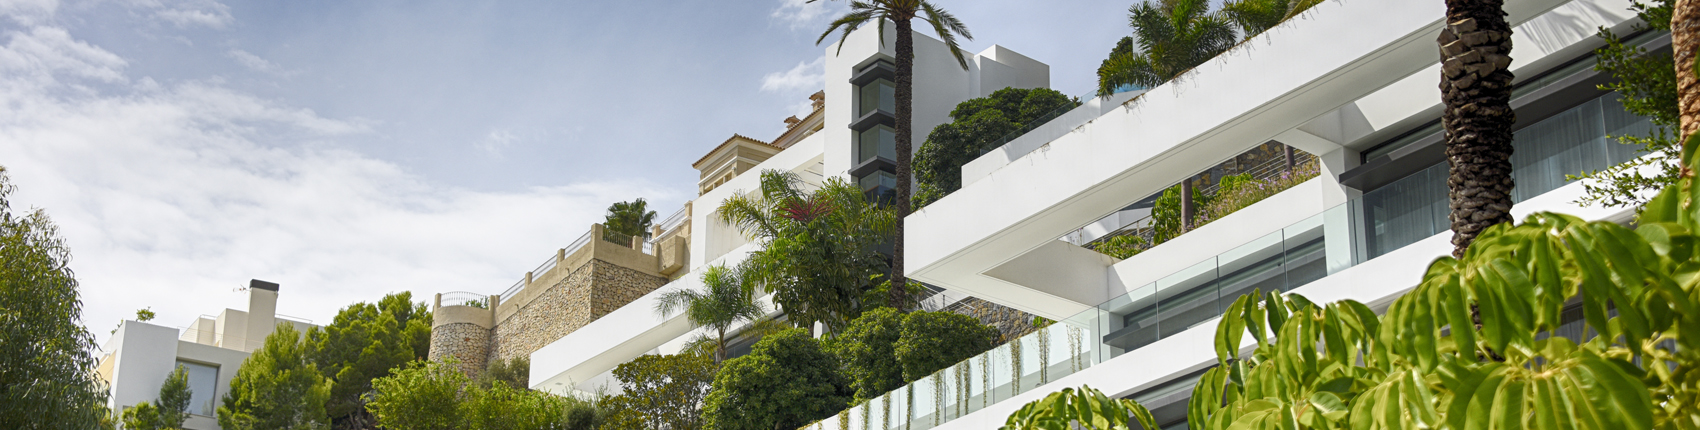 Mieten einer Finca auf Mallorca von Platin Immobilien AG